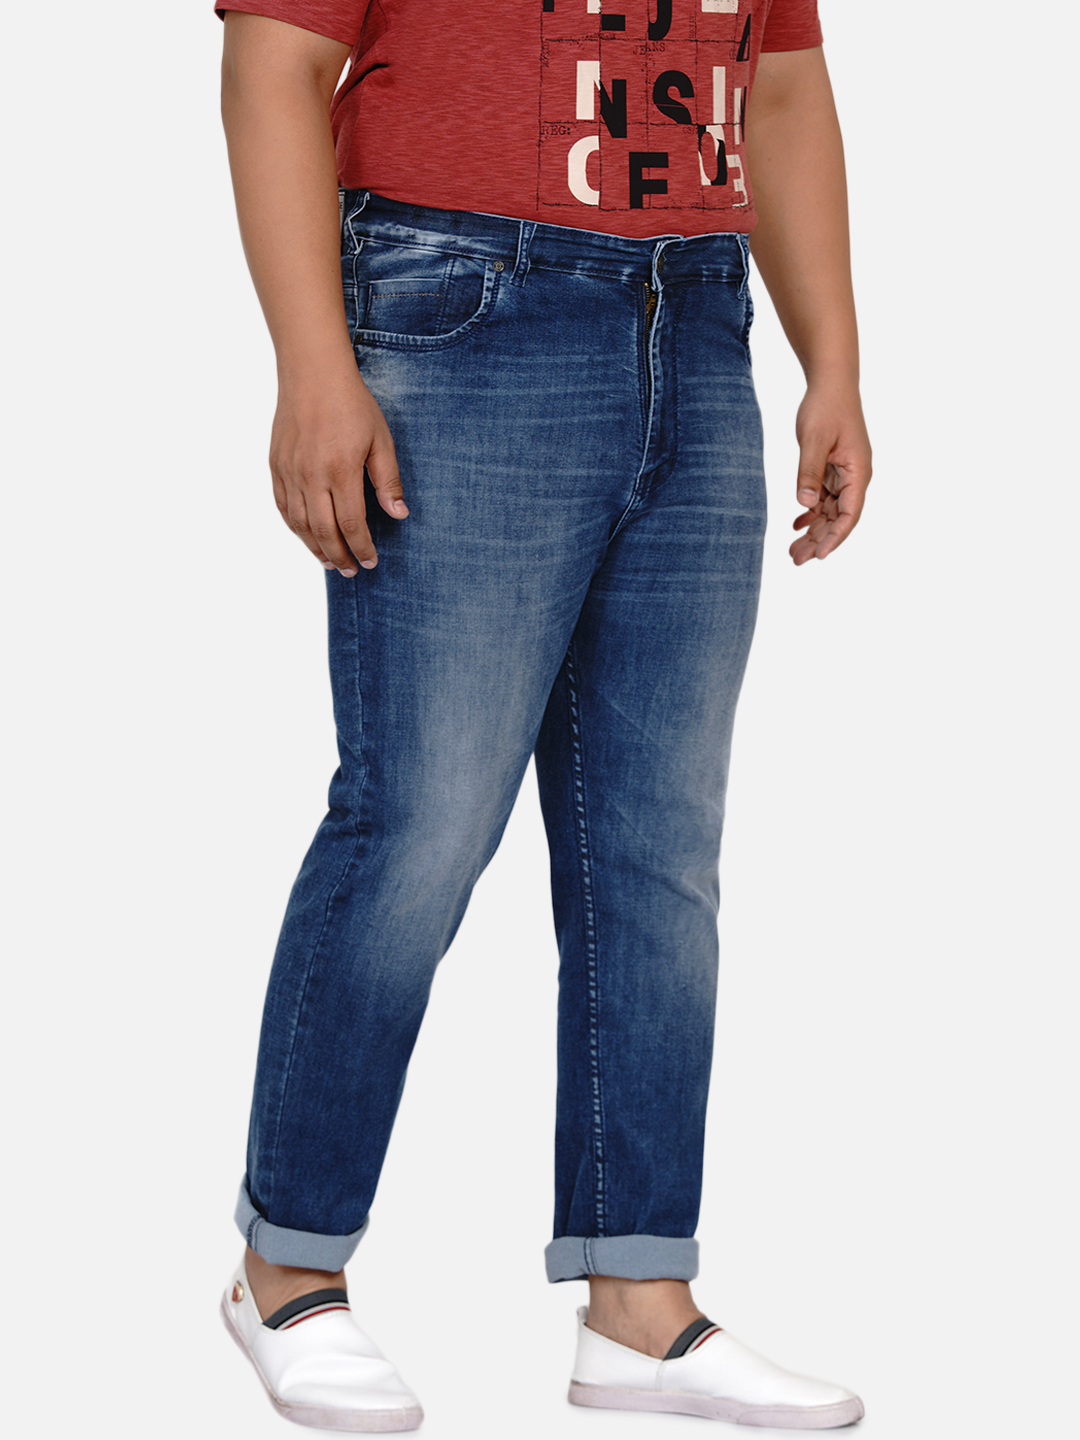 bottomwear/jeans/EJPJ25003/ejpj25003-4.jpg